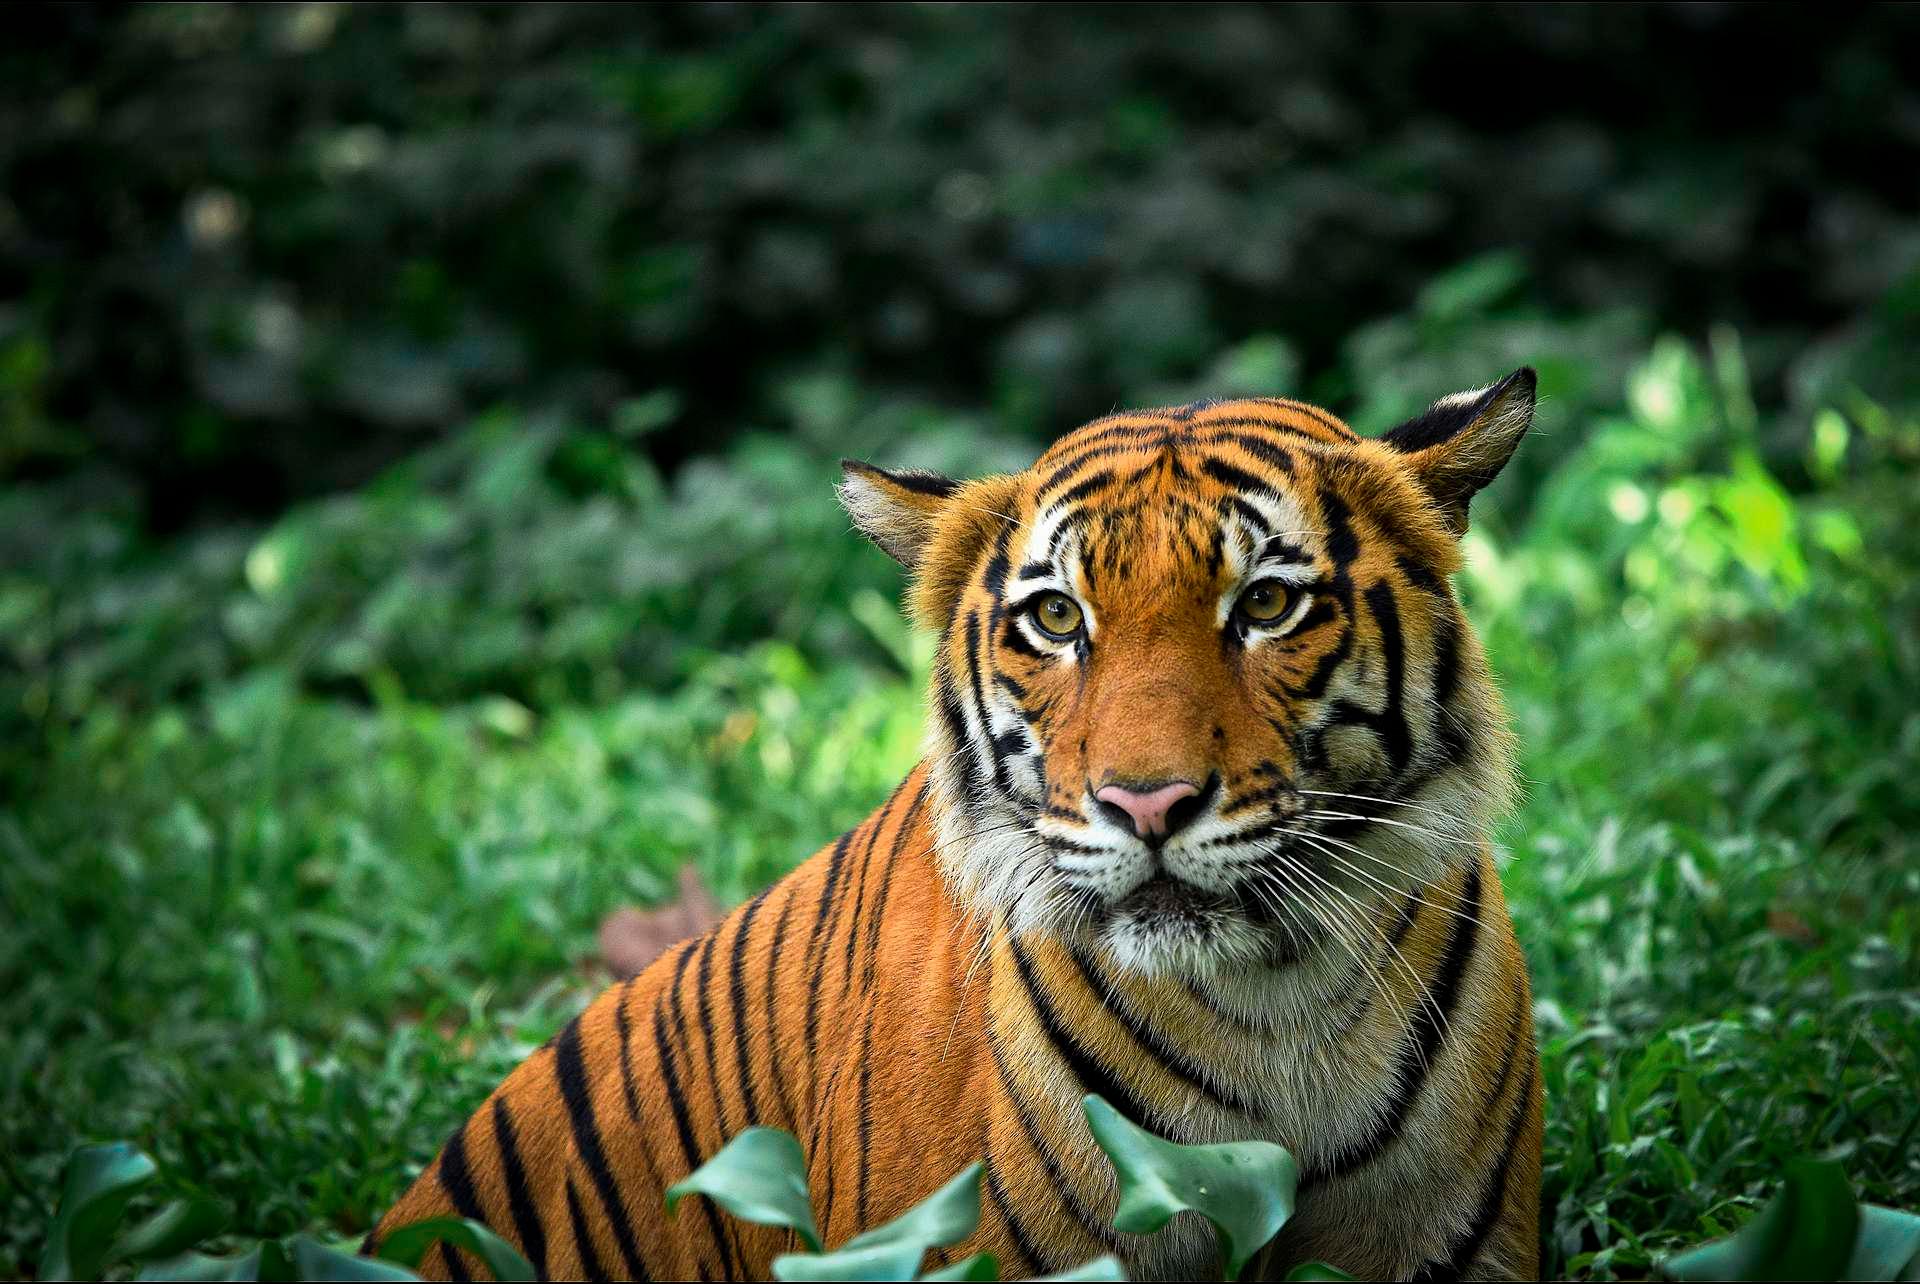 Malysisk tiger fotografert i en dyrepark. Maysia har ikke gjennomført en nasjonal kartlegging. IUCN anslår den gjenværende bestanden til mellom 250 og 340 individer.